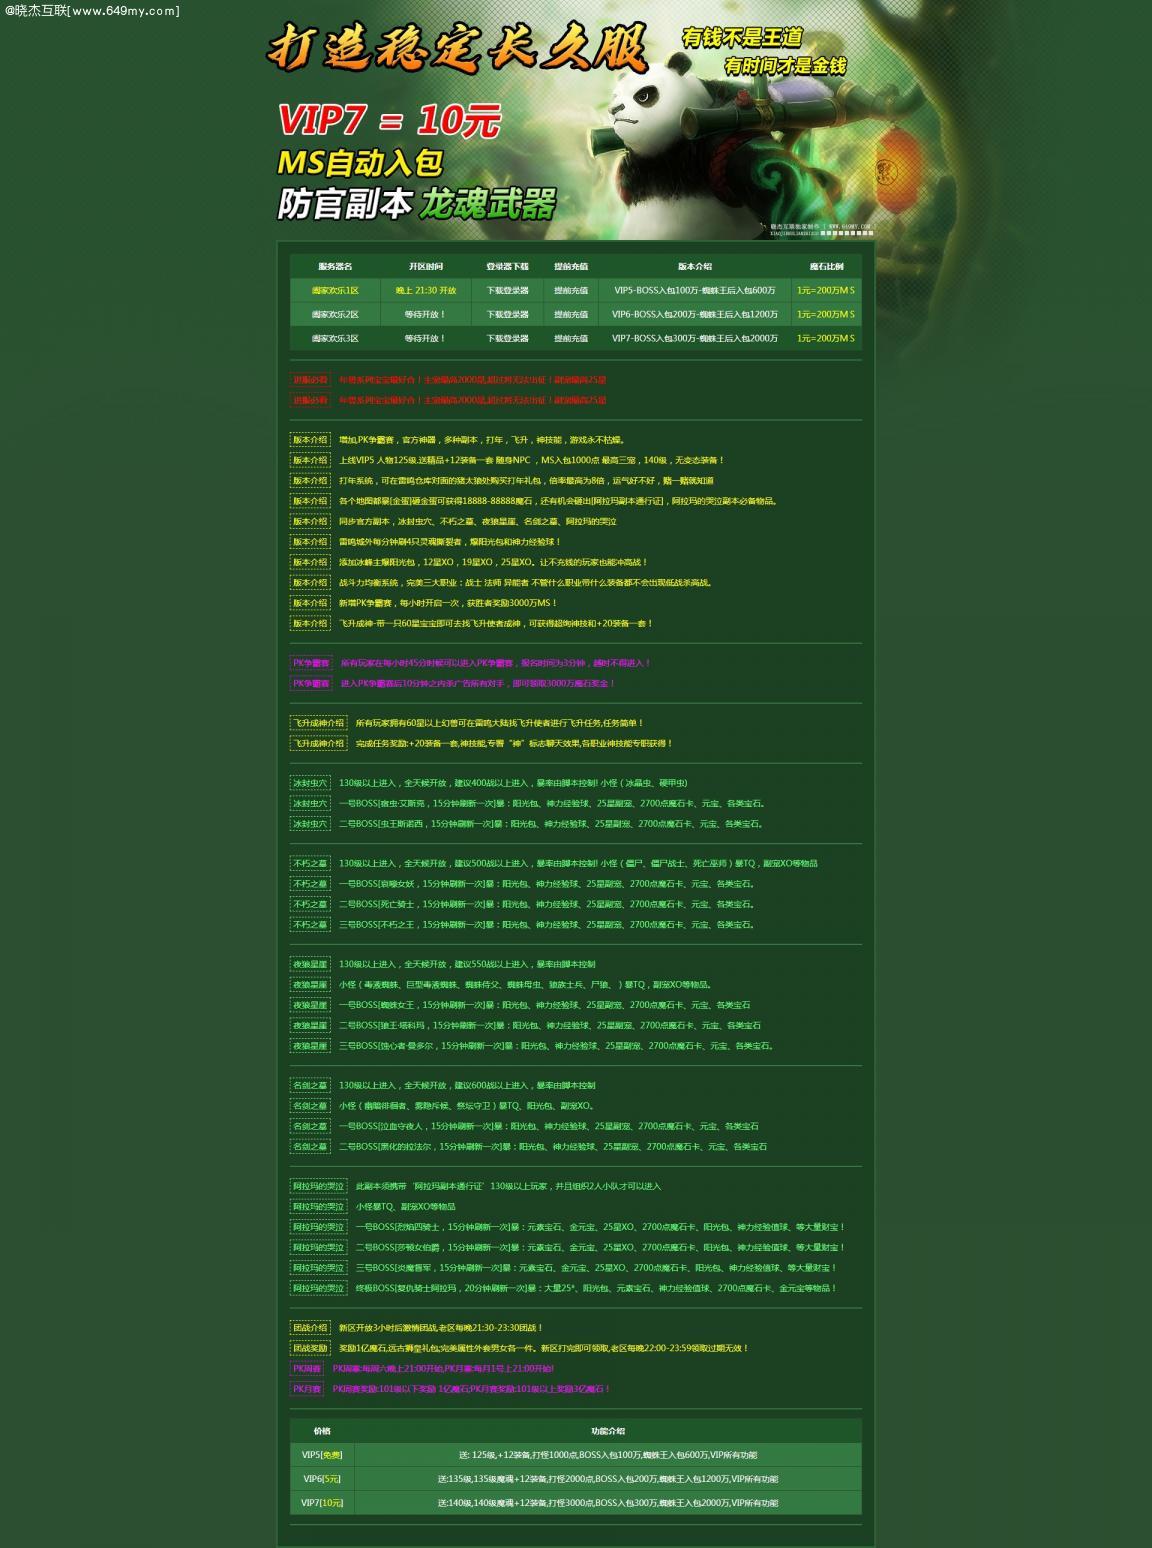 魔域私服绿色游戏开区网站模版,静态HTML,无后台,代码简洁